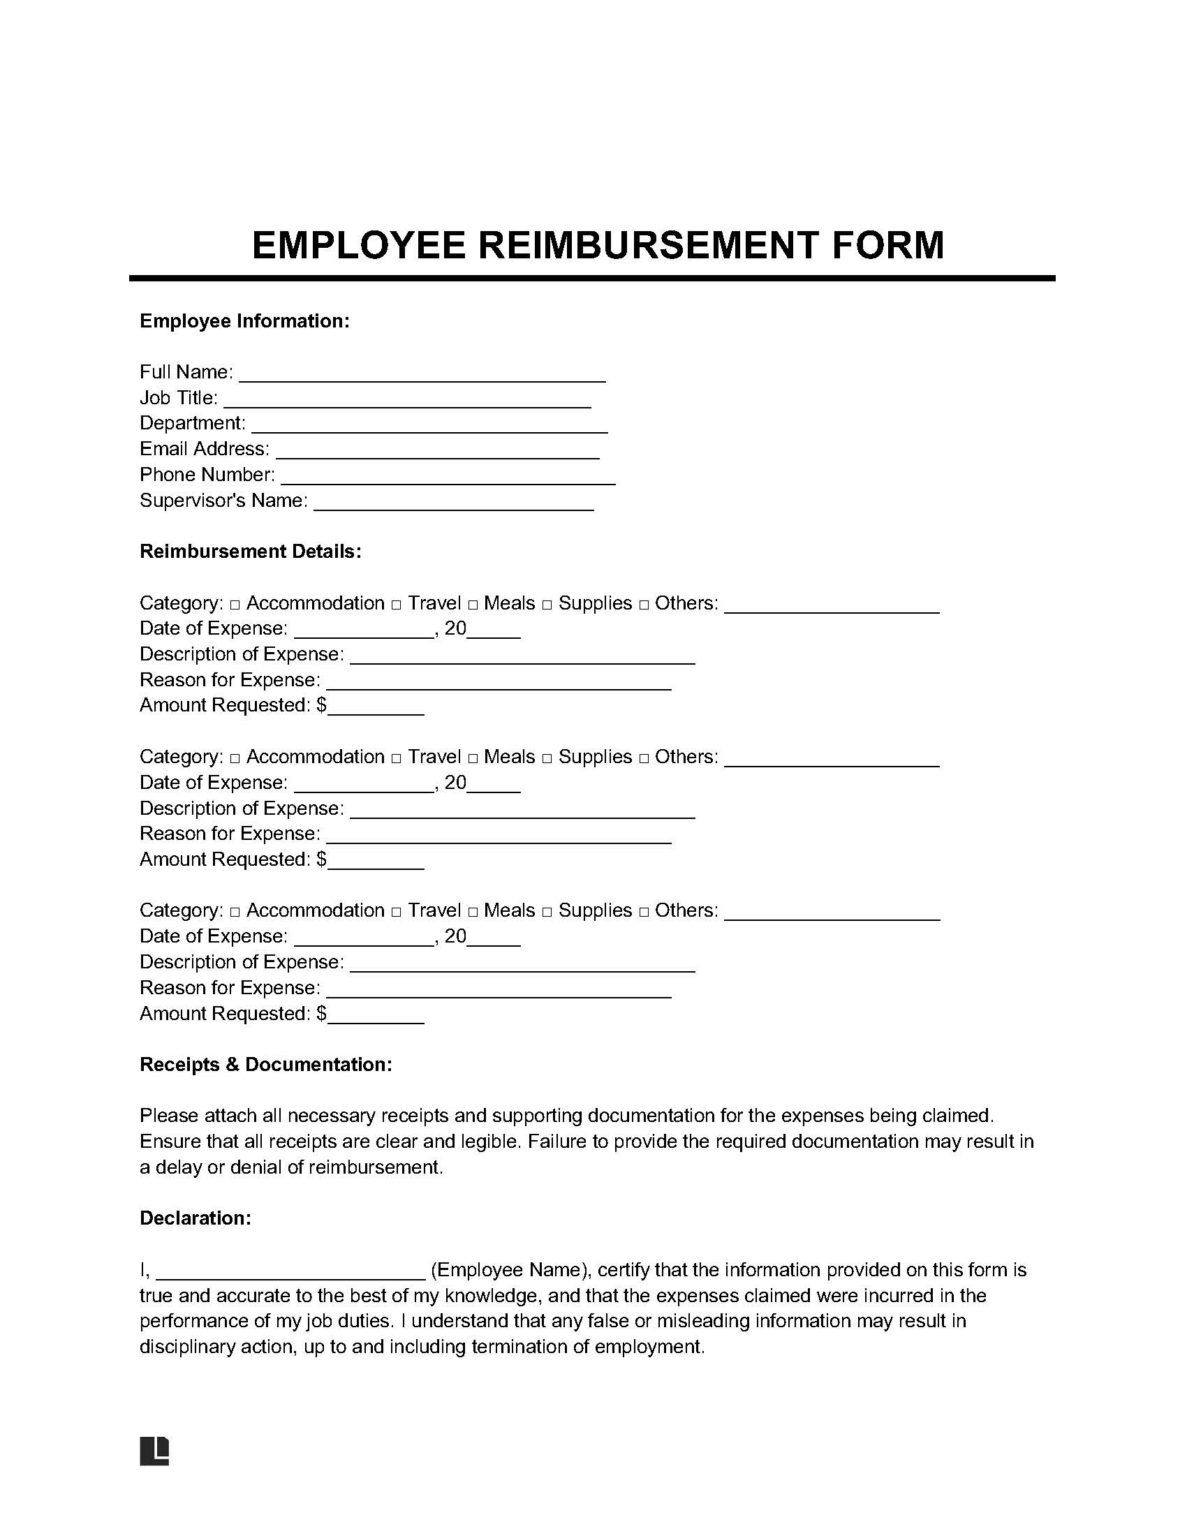 duke employee travel and reimbursement